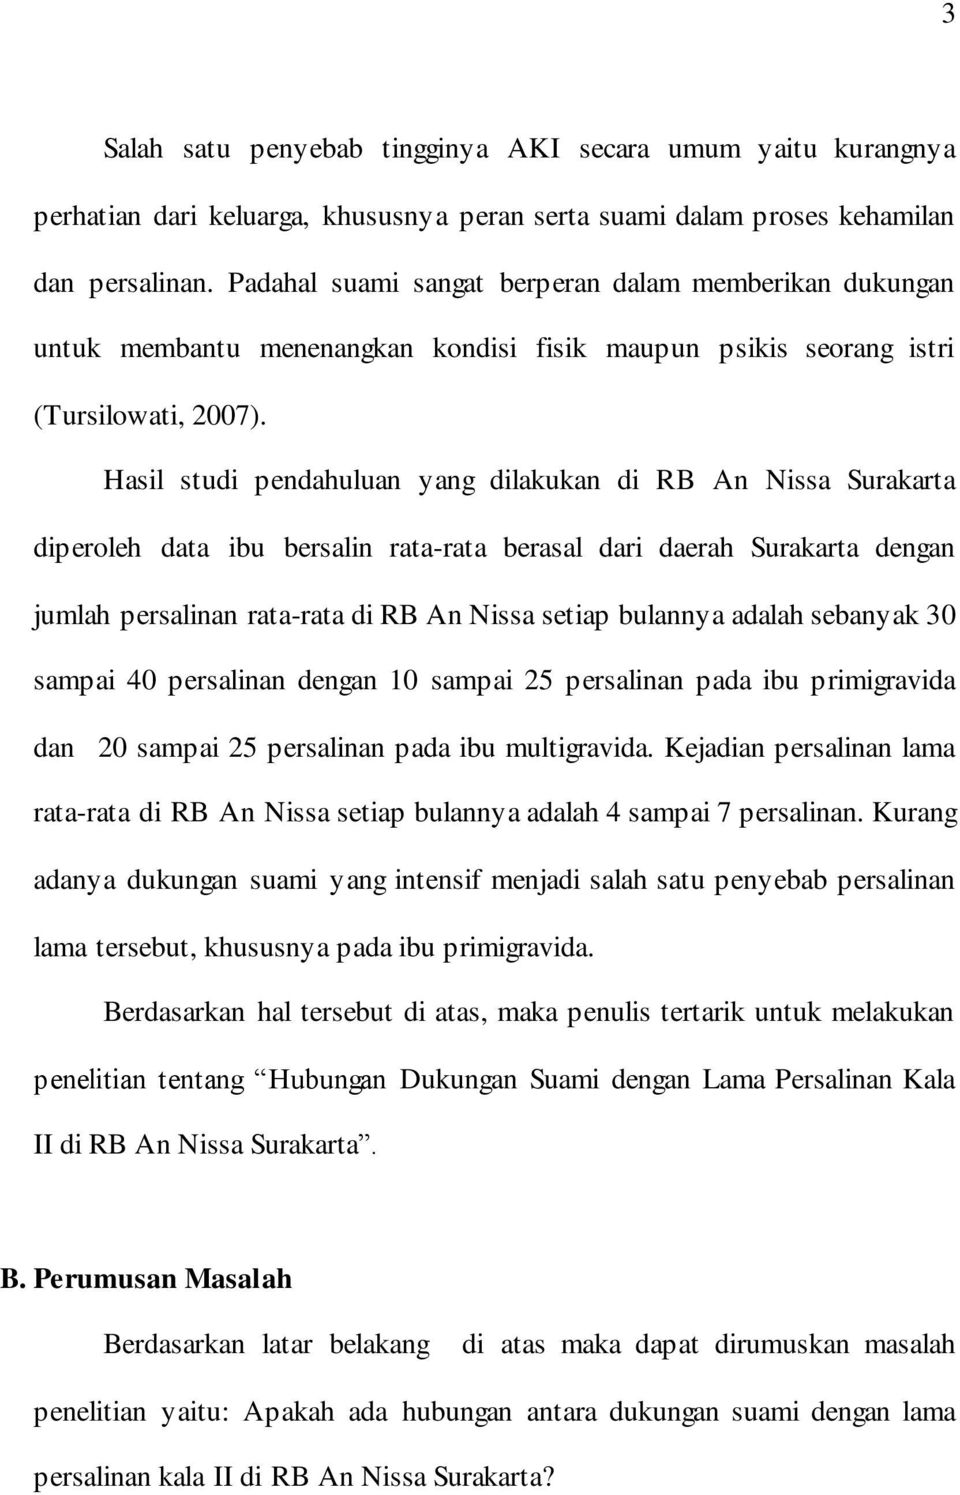 Hasil studi pendahuluan yang dilakukan di RB An Nissa Surakarta diperoleh data ibu bersalin rata-rata berasal dari daerah Surakarta dengan jumlah persalinan rata-rata di RB An Nissa setiap bulannya